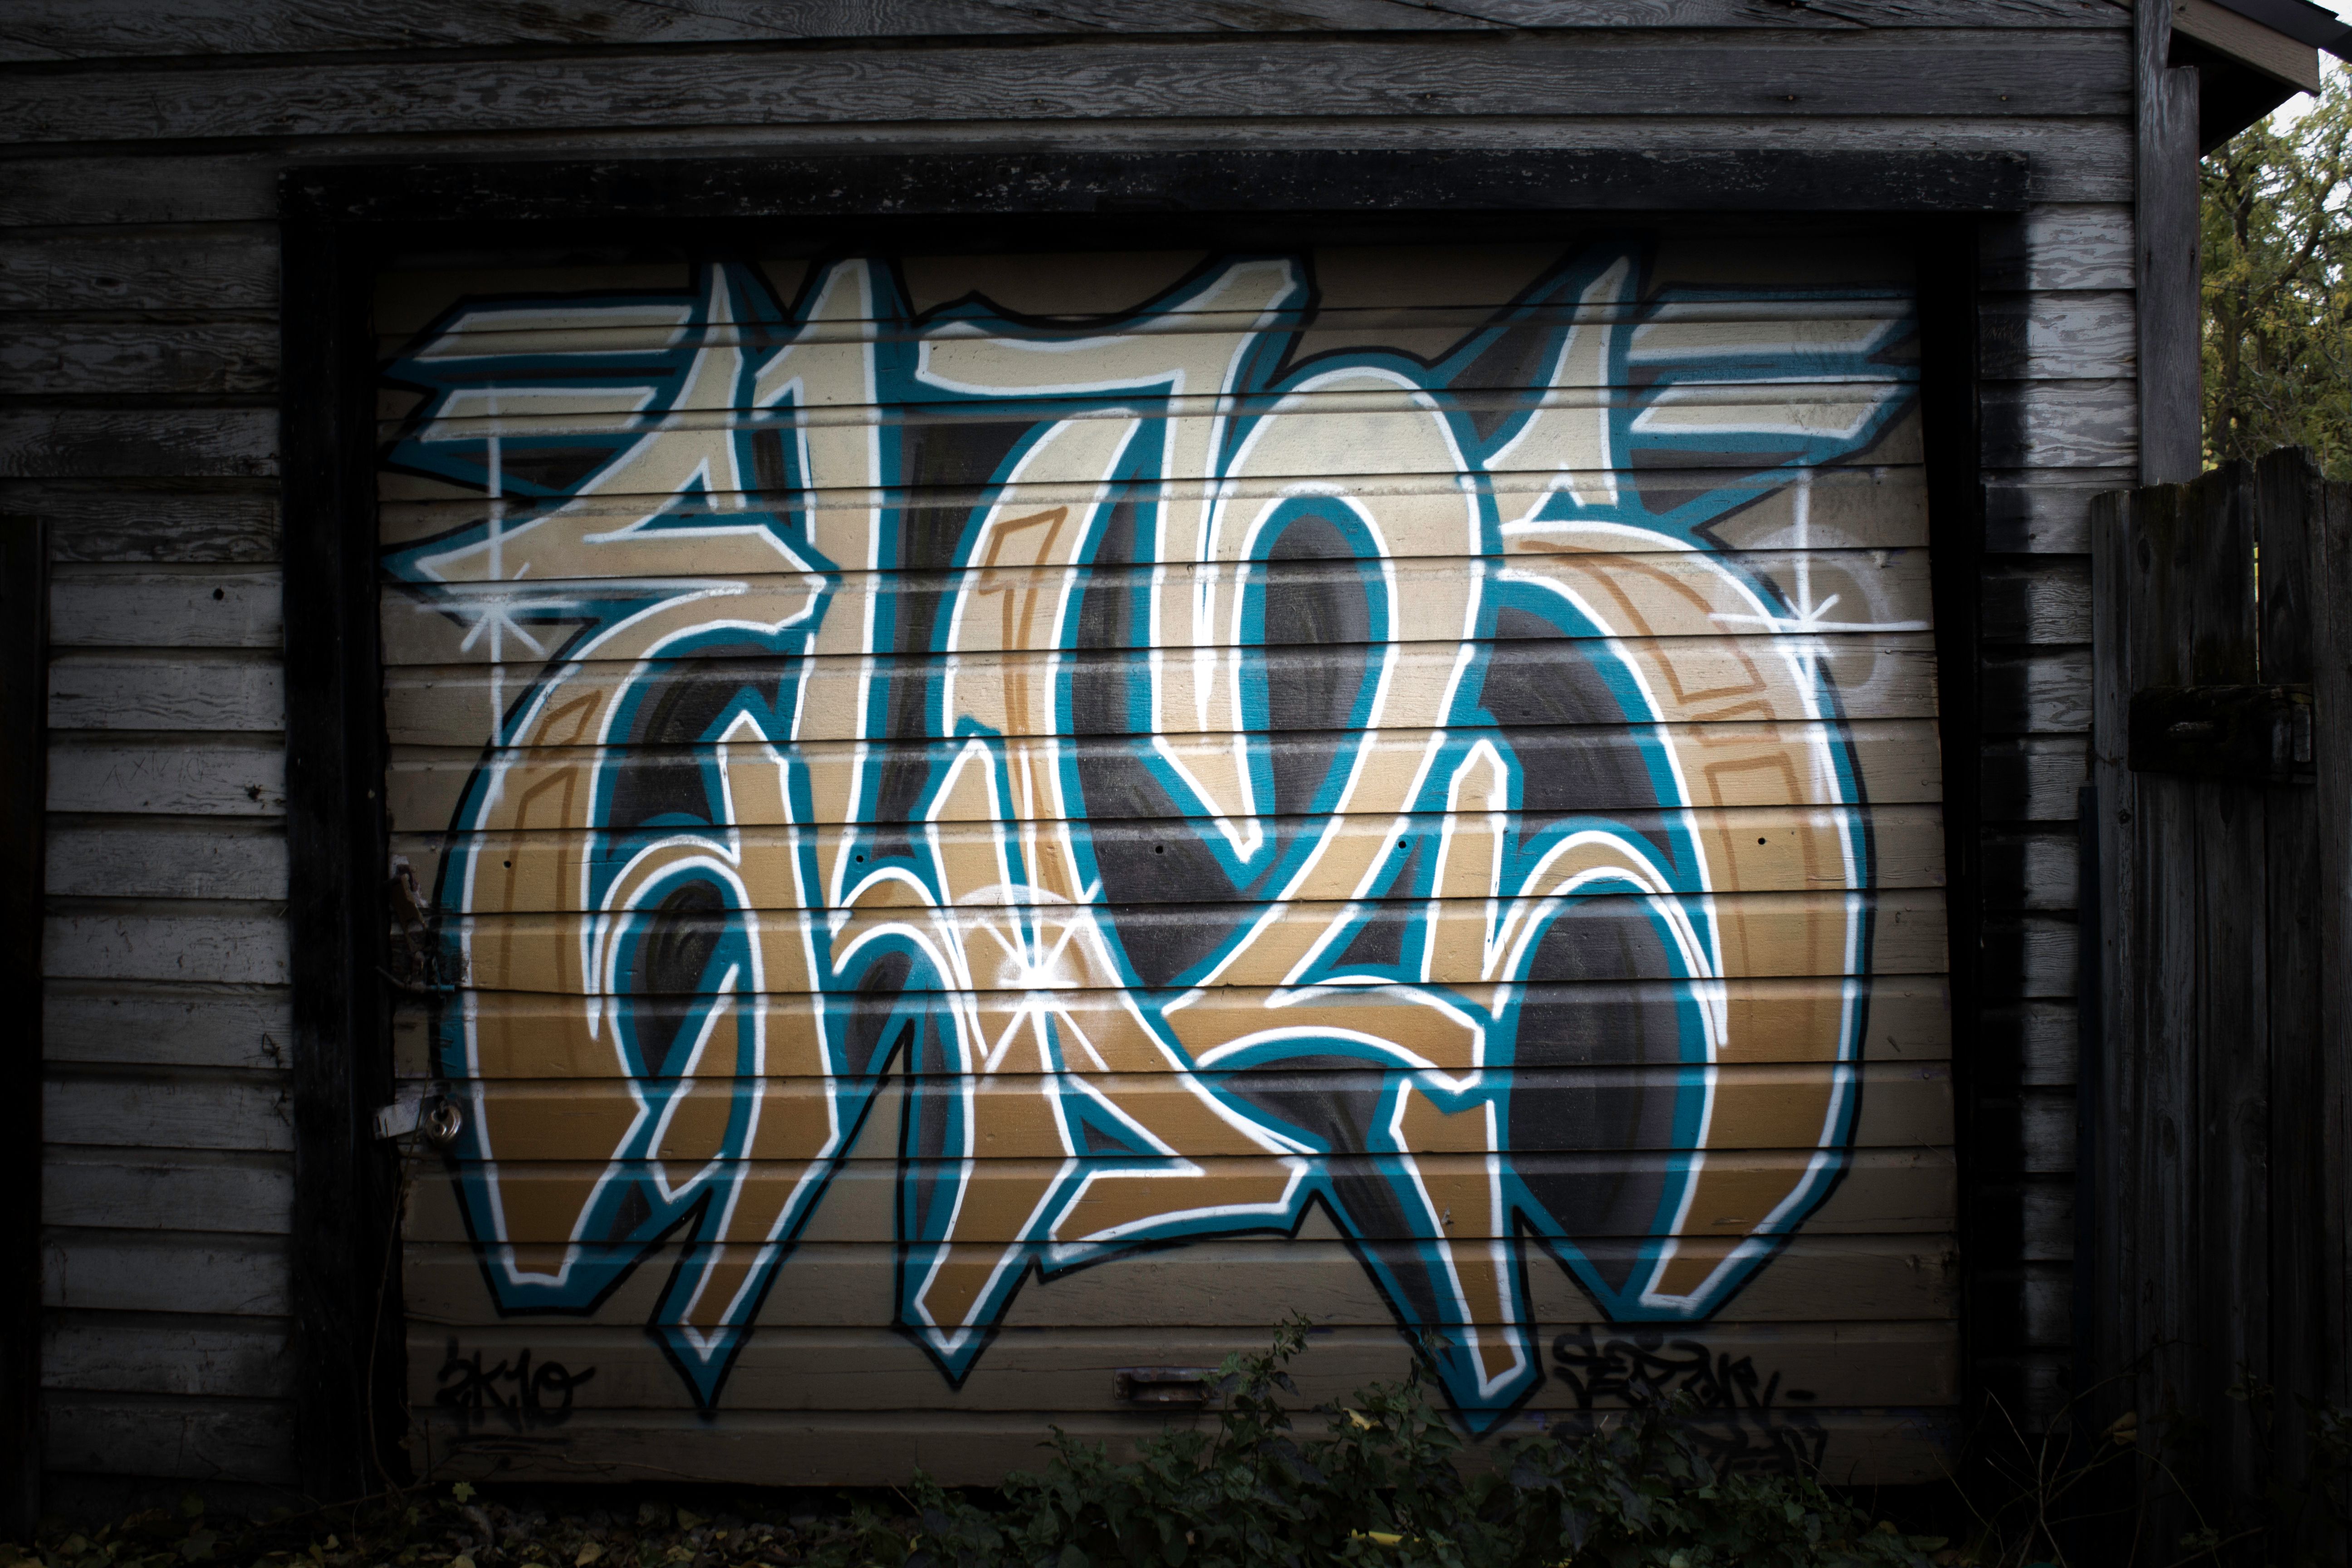 Graffiti.jpg